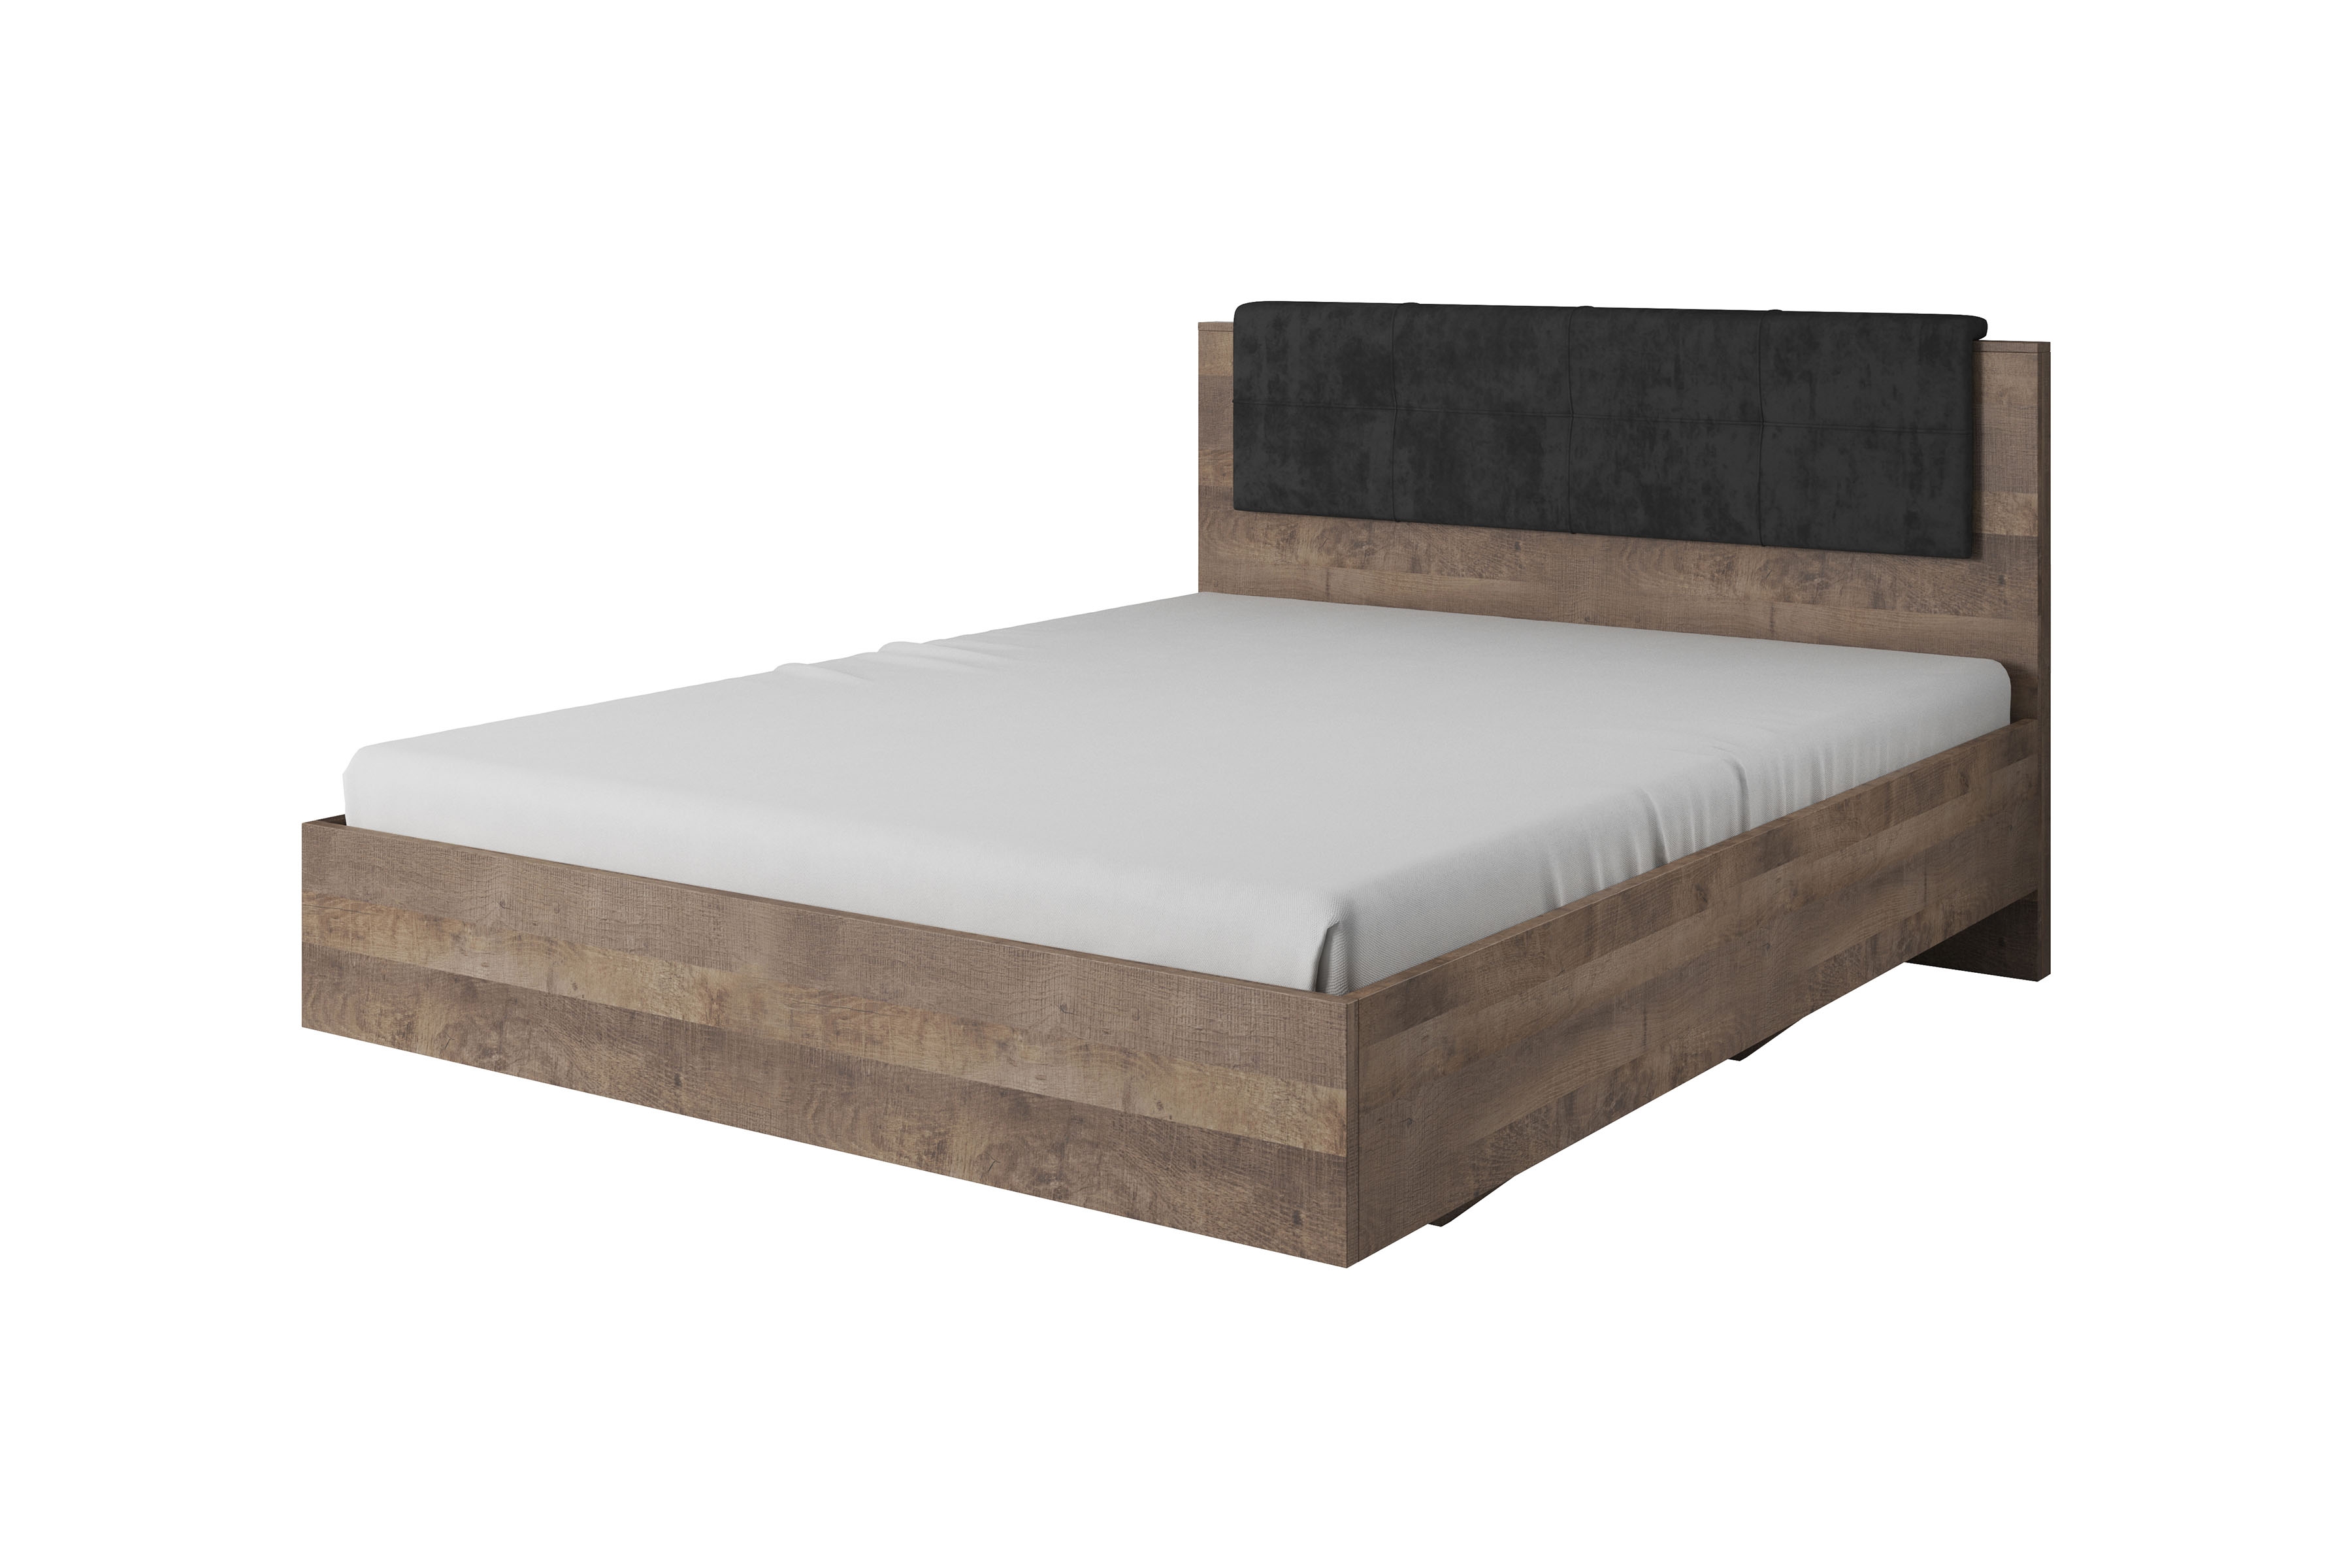 Łóżko sypialniane Moduzo z tapicerowanym zagłówkiem 160x200 - dąb sand grange/matera Łóżko sypialniane Moduzo z tapicerowanym zagłówkiem 160x200 - dąb sand grange/matera